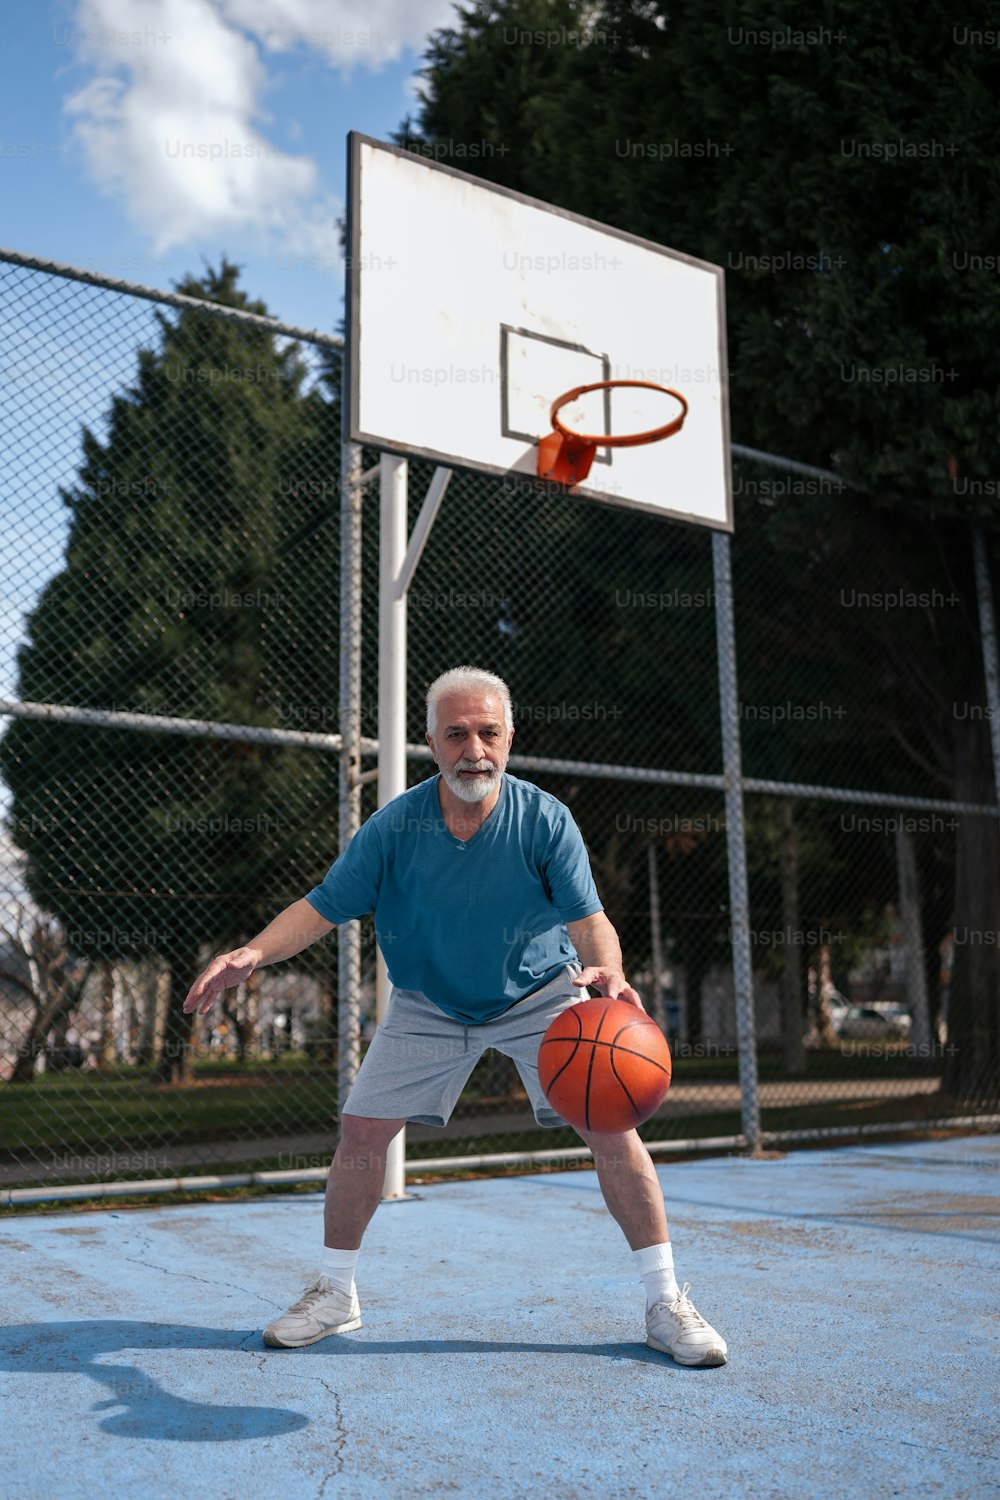 농구 골대 앞에서 농구공을 들고 있는 남자